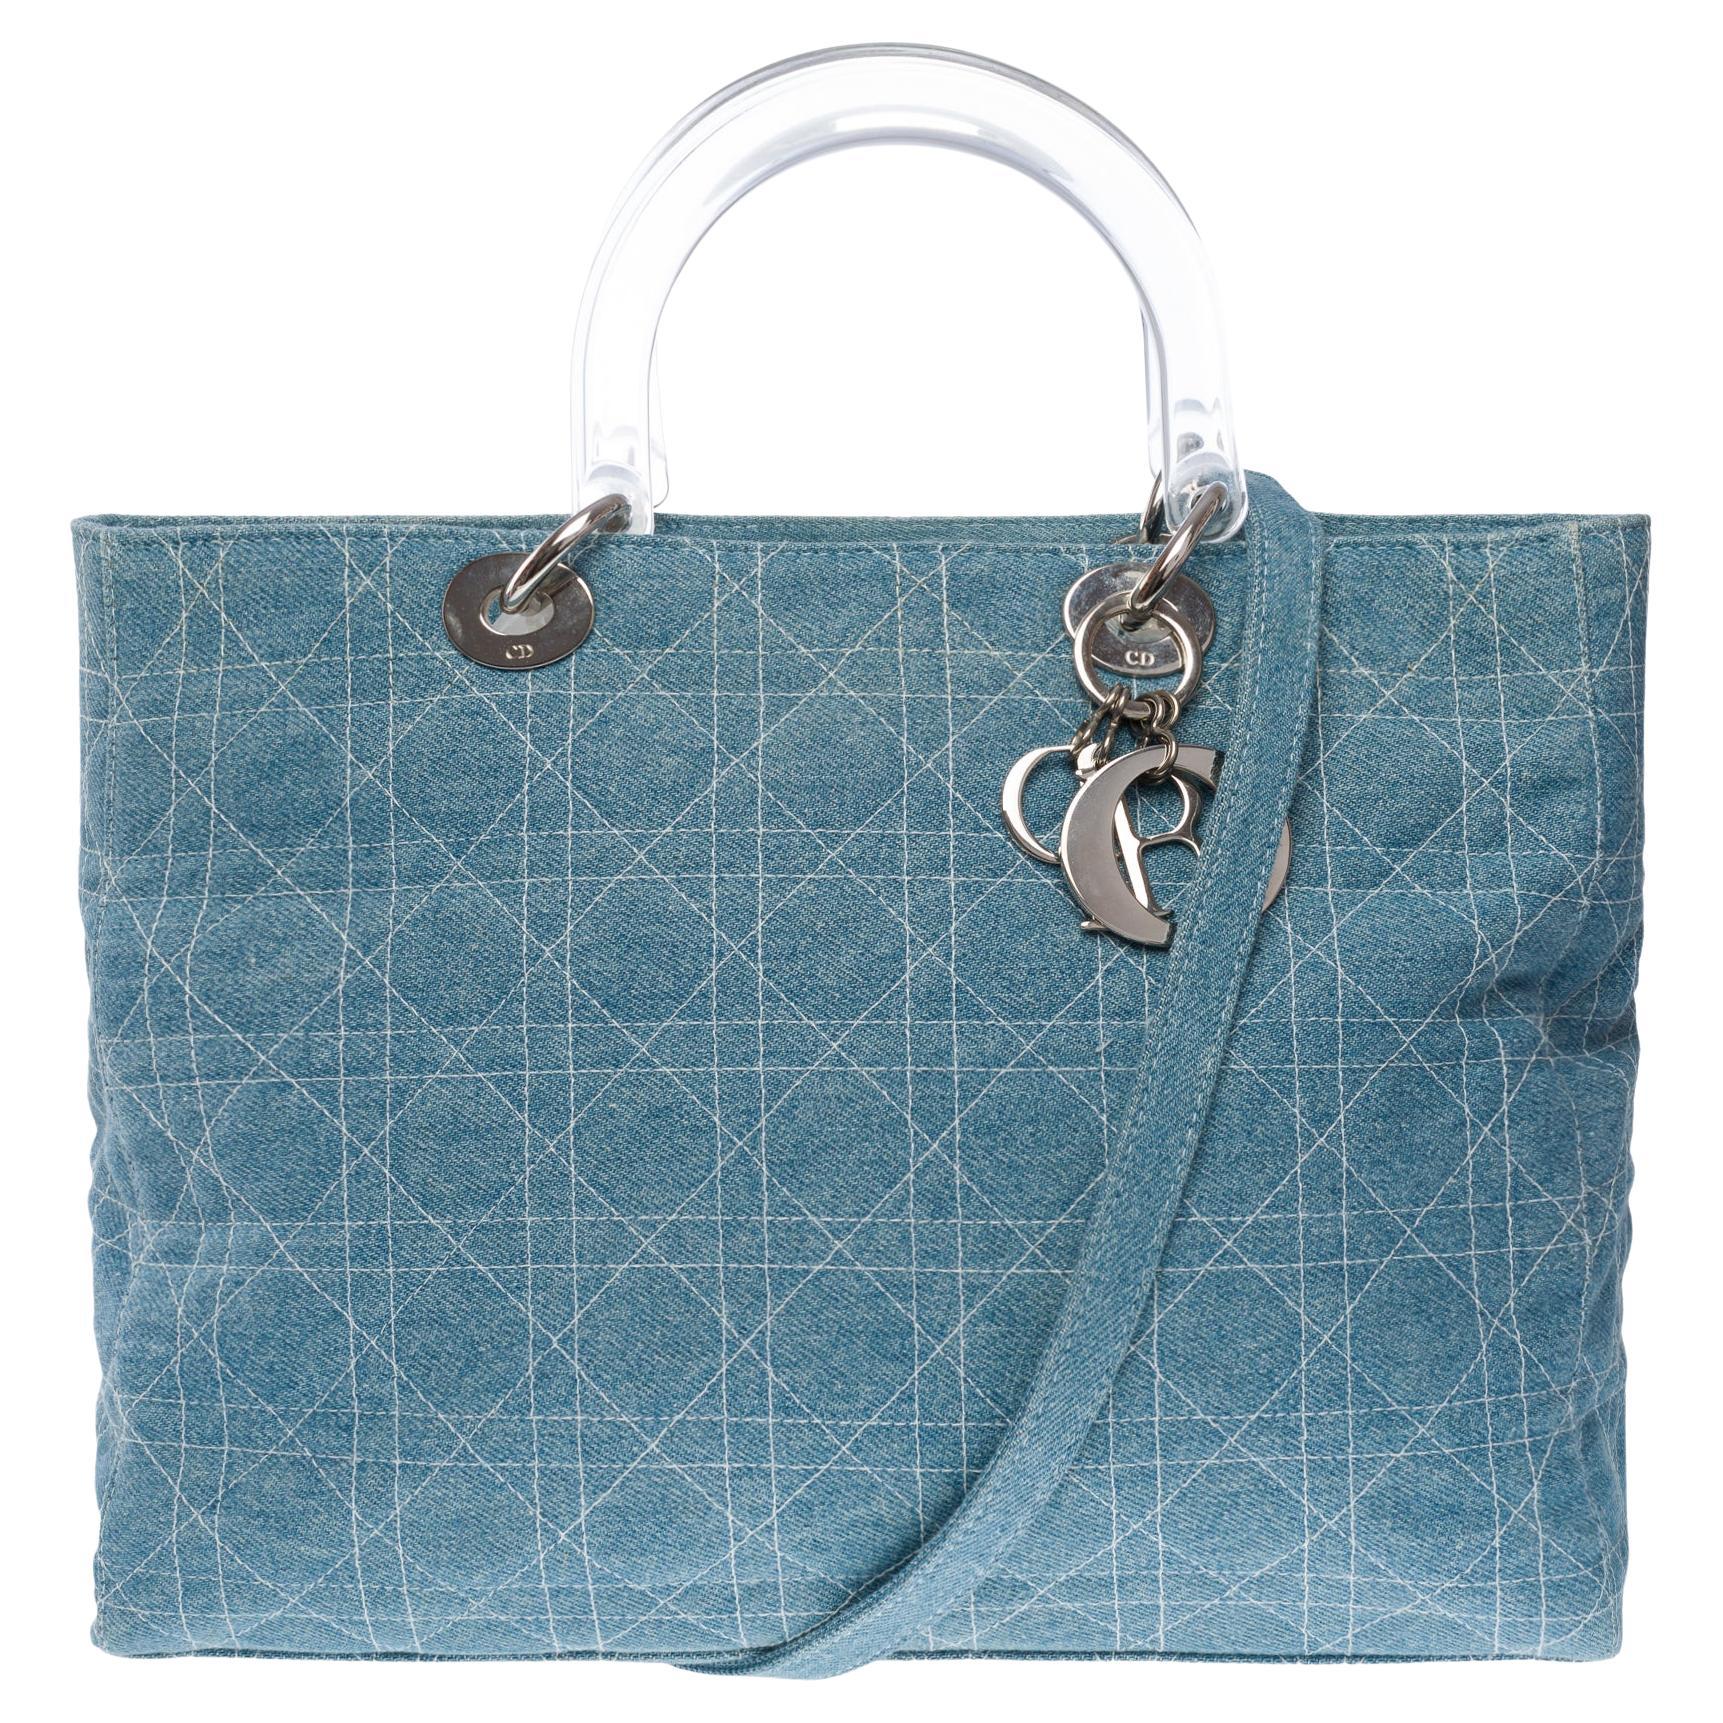 Gorgeous Limited Edition Lady Dior GM handbag strap in blue denim , SHW